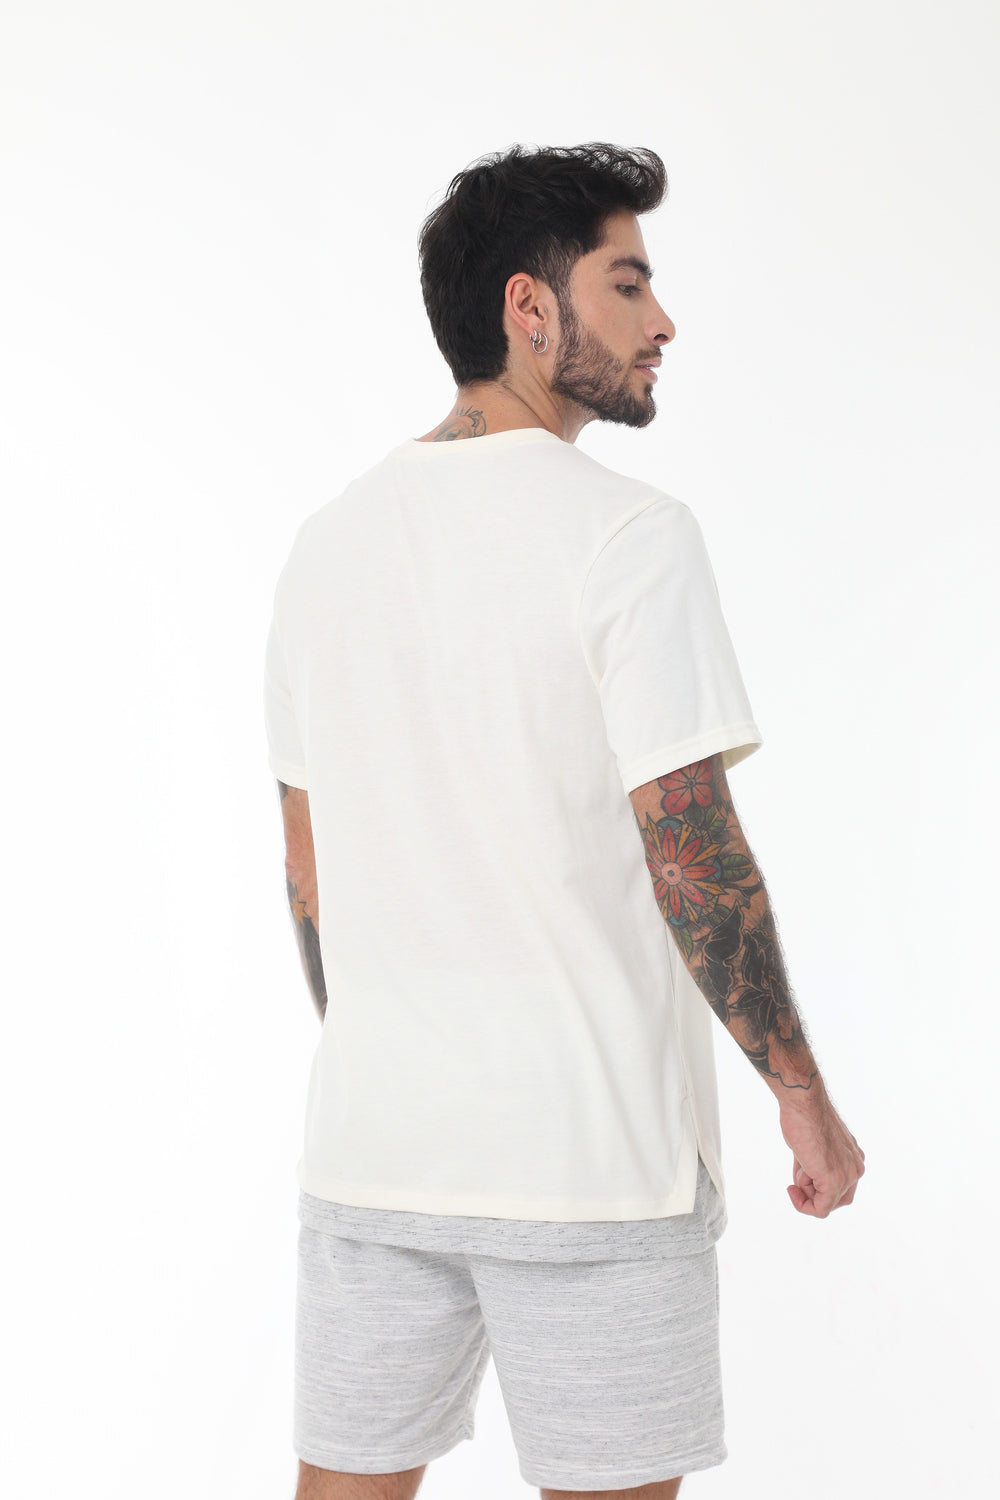 Camiseta ivory manga corta, con simulación doble prenda, estampado en plastisol y cuello redondo con para hombre